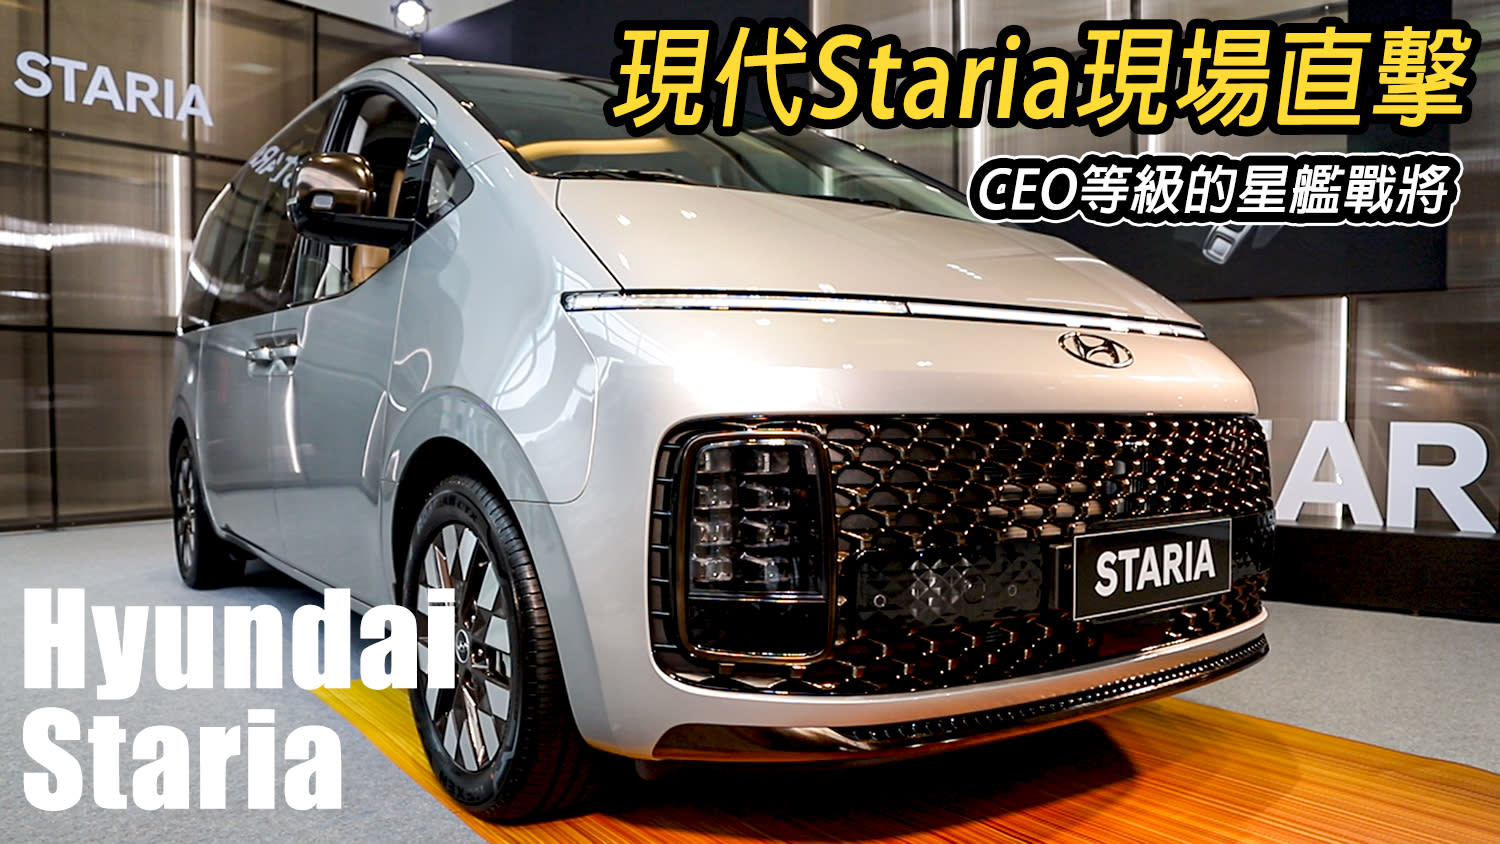 最科幻的mpv Hyundai Staria現場直擊 五車型 7 8 9人座俱全預售價150萬起